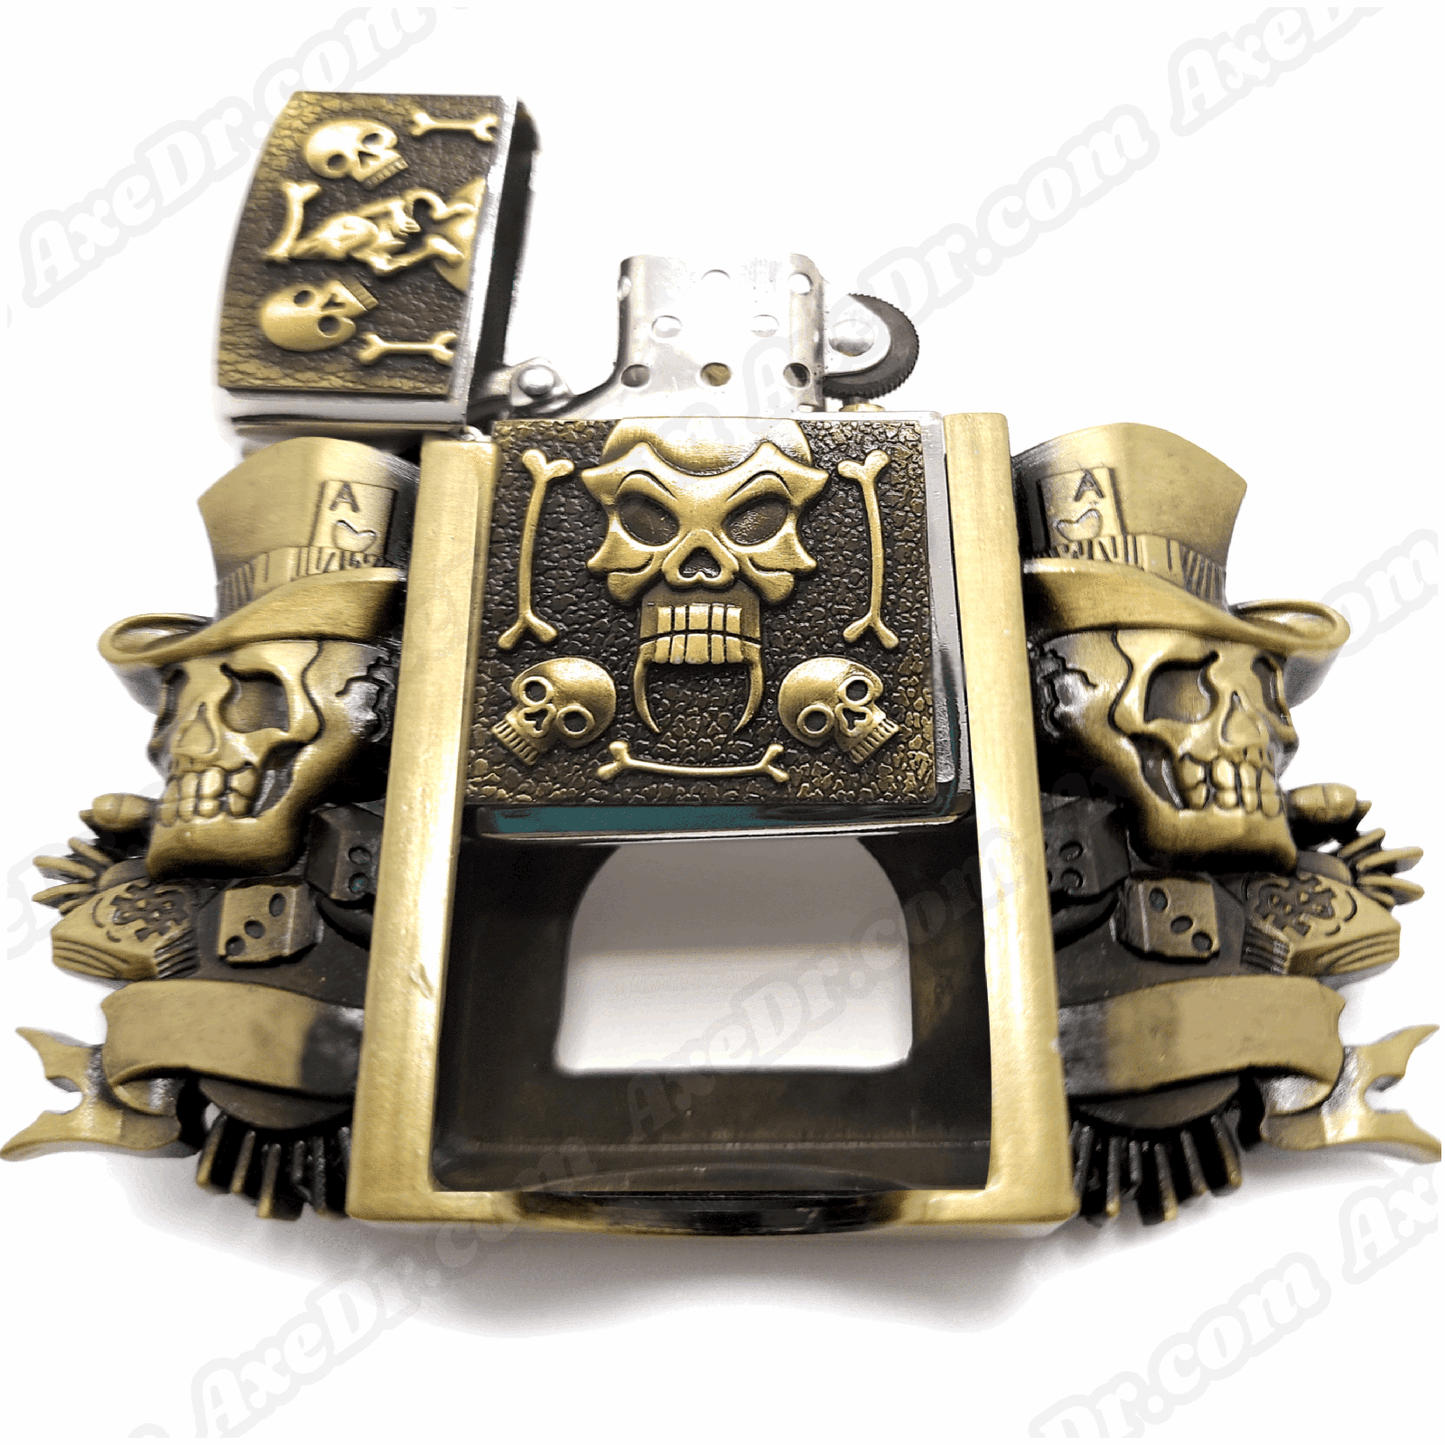 Jokers Skull & Bones Bronze Lighter Belt Buckle and Genuine Leather Belt shop.AxeDr.com Buckles with Belt, Genuine Leather